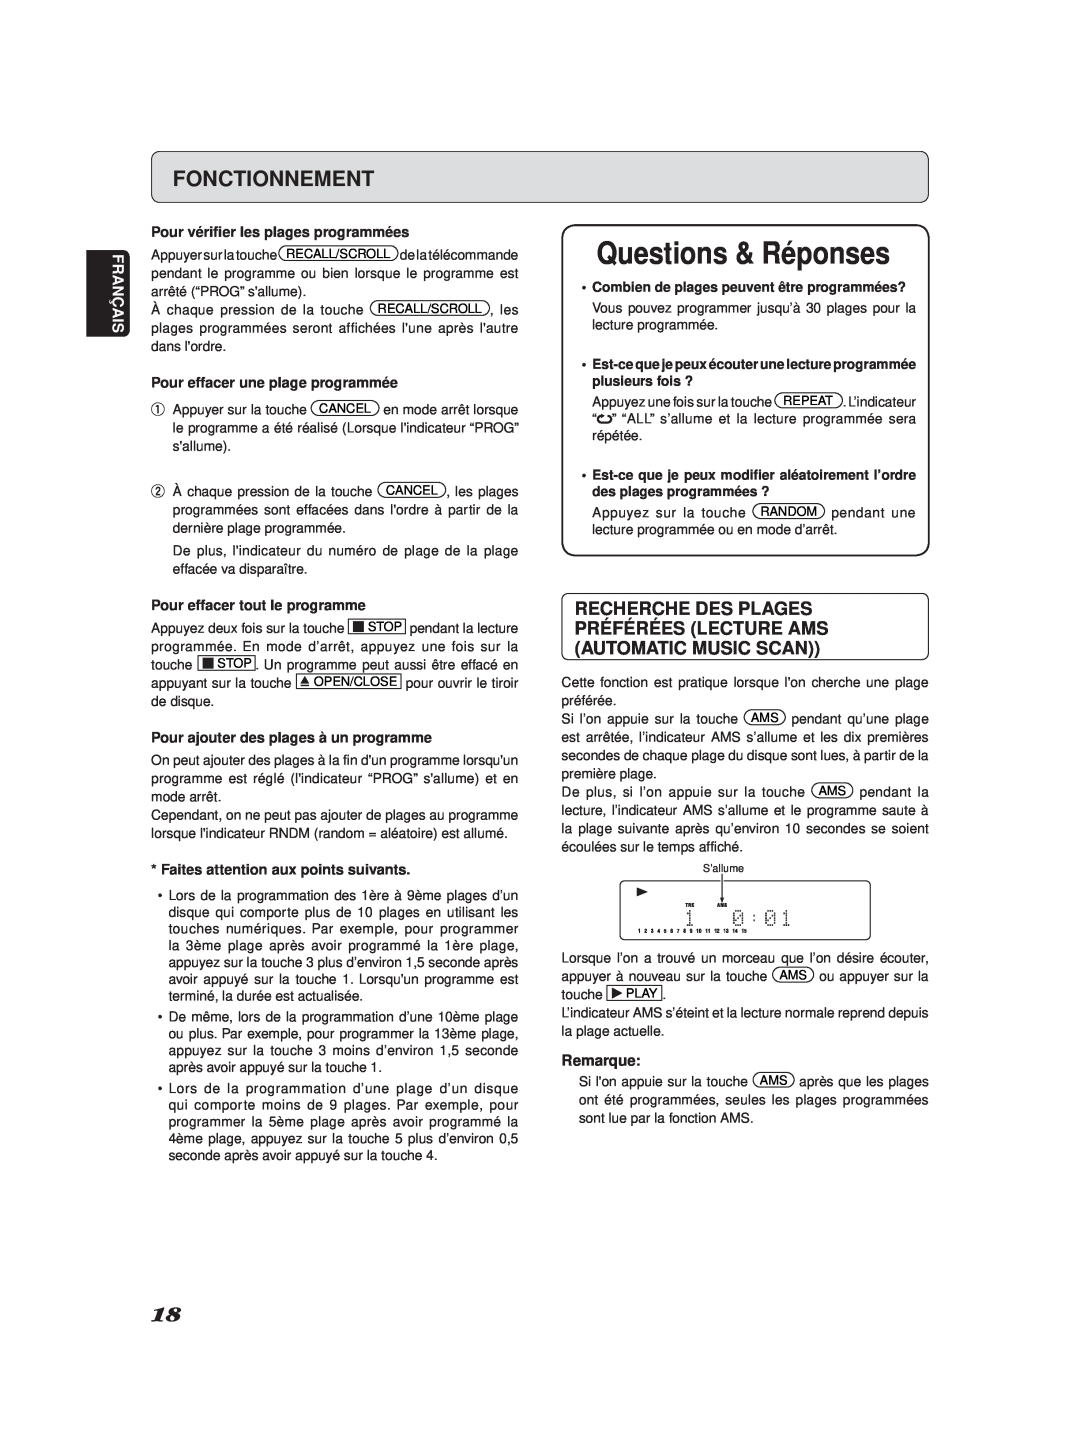 Marantz SA-11S2 manual Questions & Réponses, Fonctionnement, Français, Pour vériﬁer les plages programmées, Remarque 